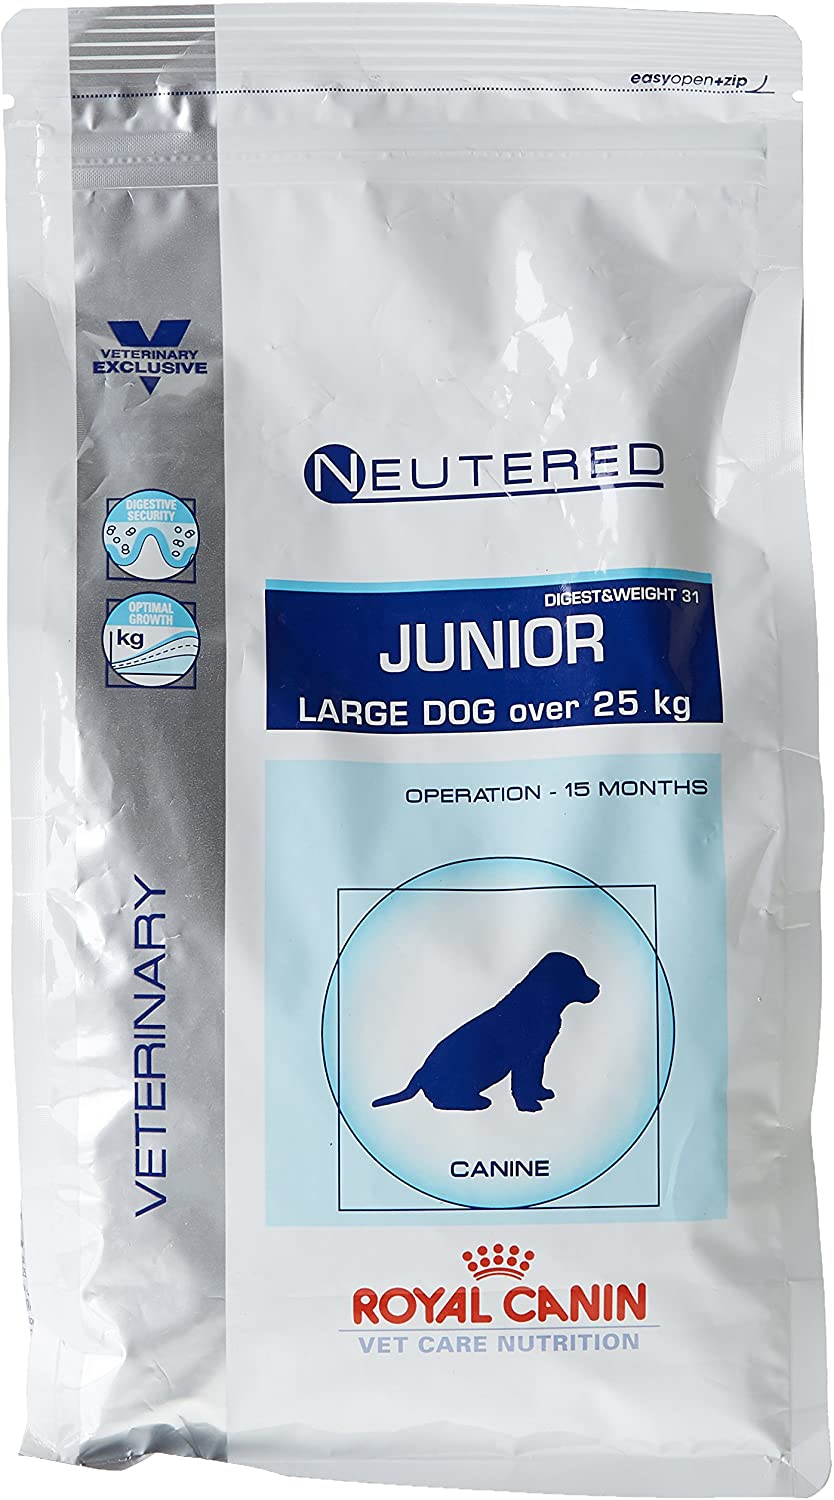  ROYAL CANIN Veterinary Care Nutrition Dog Digest and Weight Neutered Nourriture pour Chien Junior/Chienne Stérilisé de Grande Race 